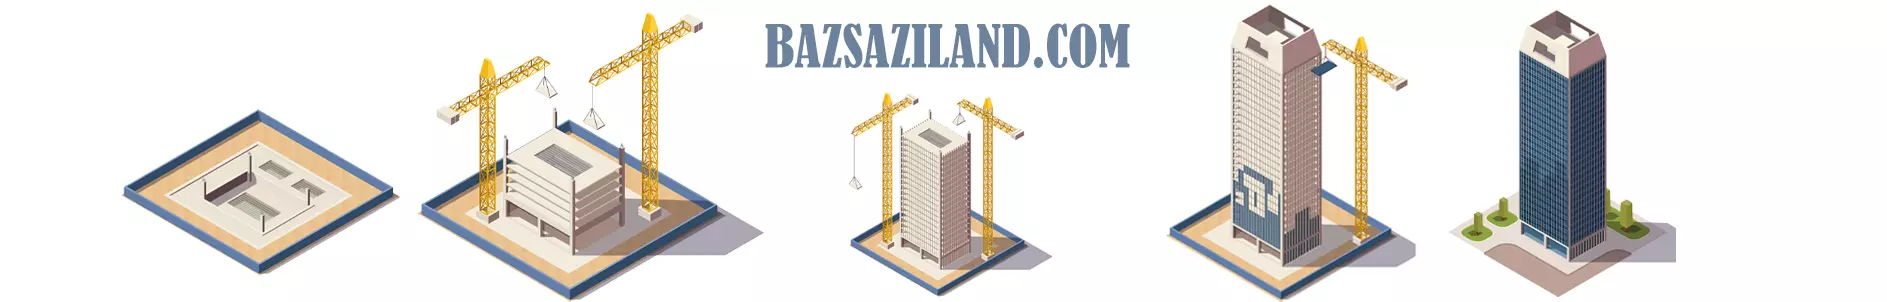 bazsaziland.com